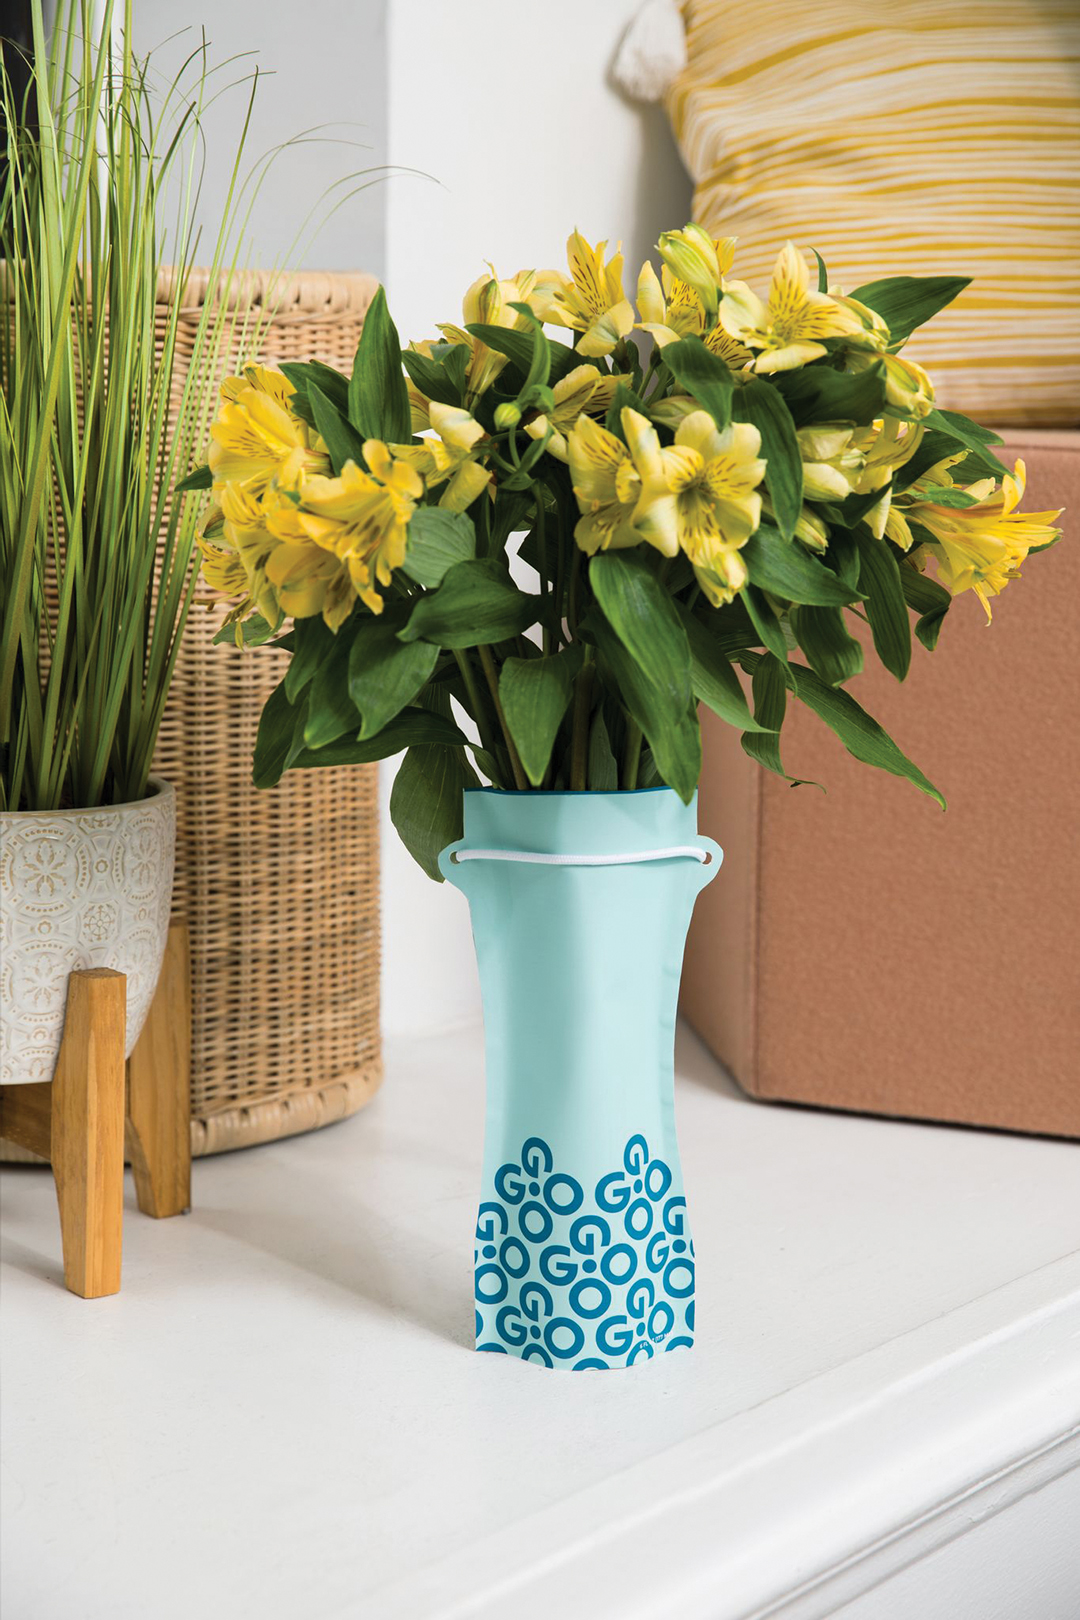 GoGo Flower portable water vase.